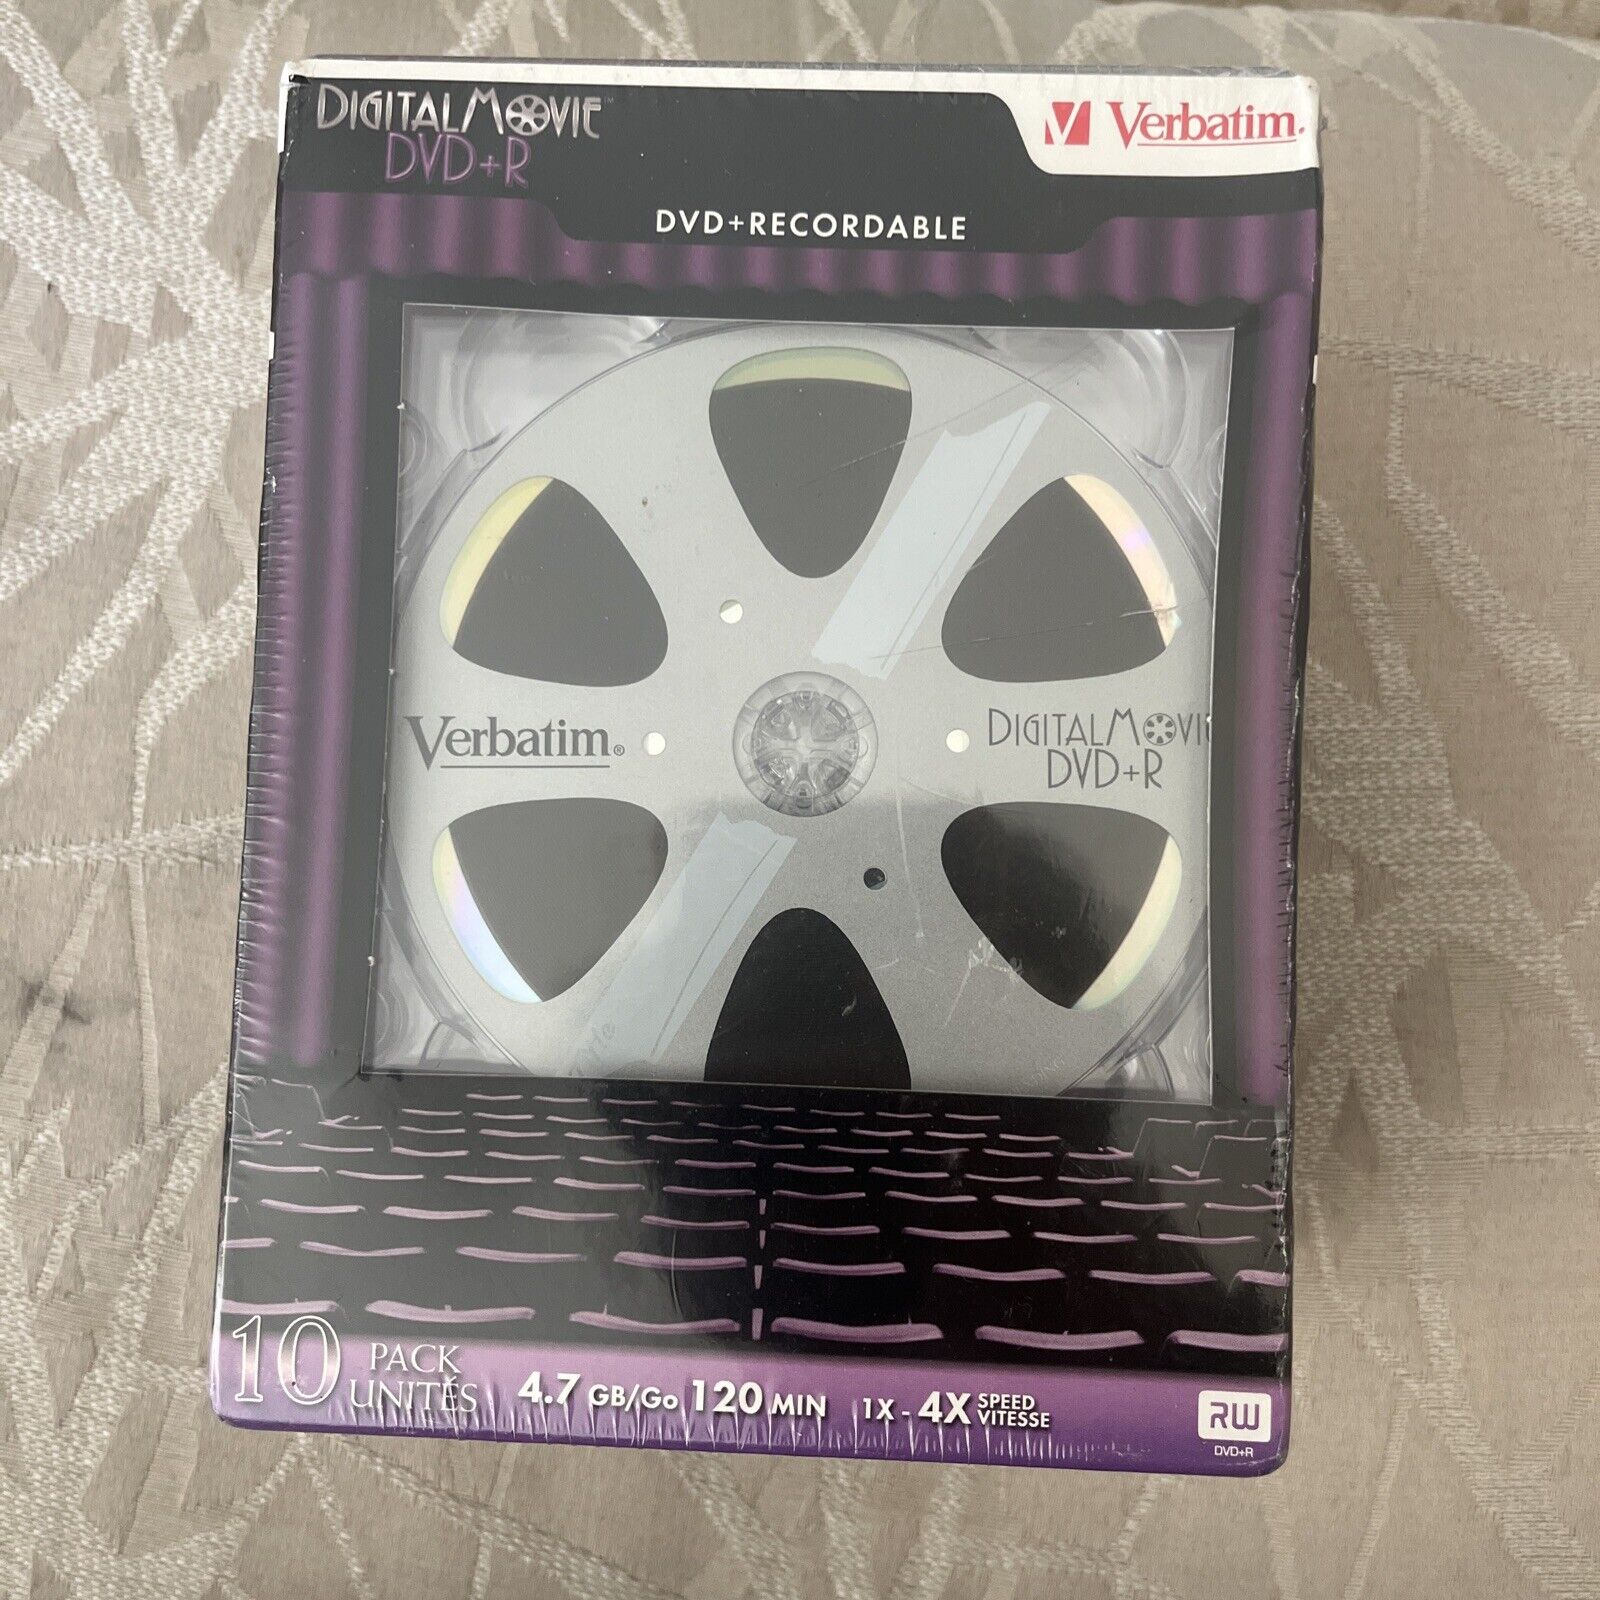 Verbatim Digital Movie DVD-R Blank Discs 10 pack sealed *NEW* ME79 Verbatim